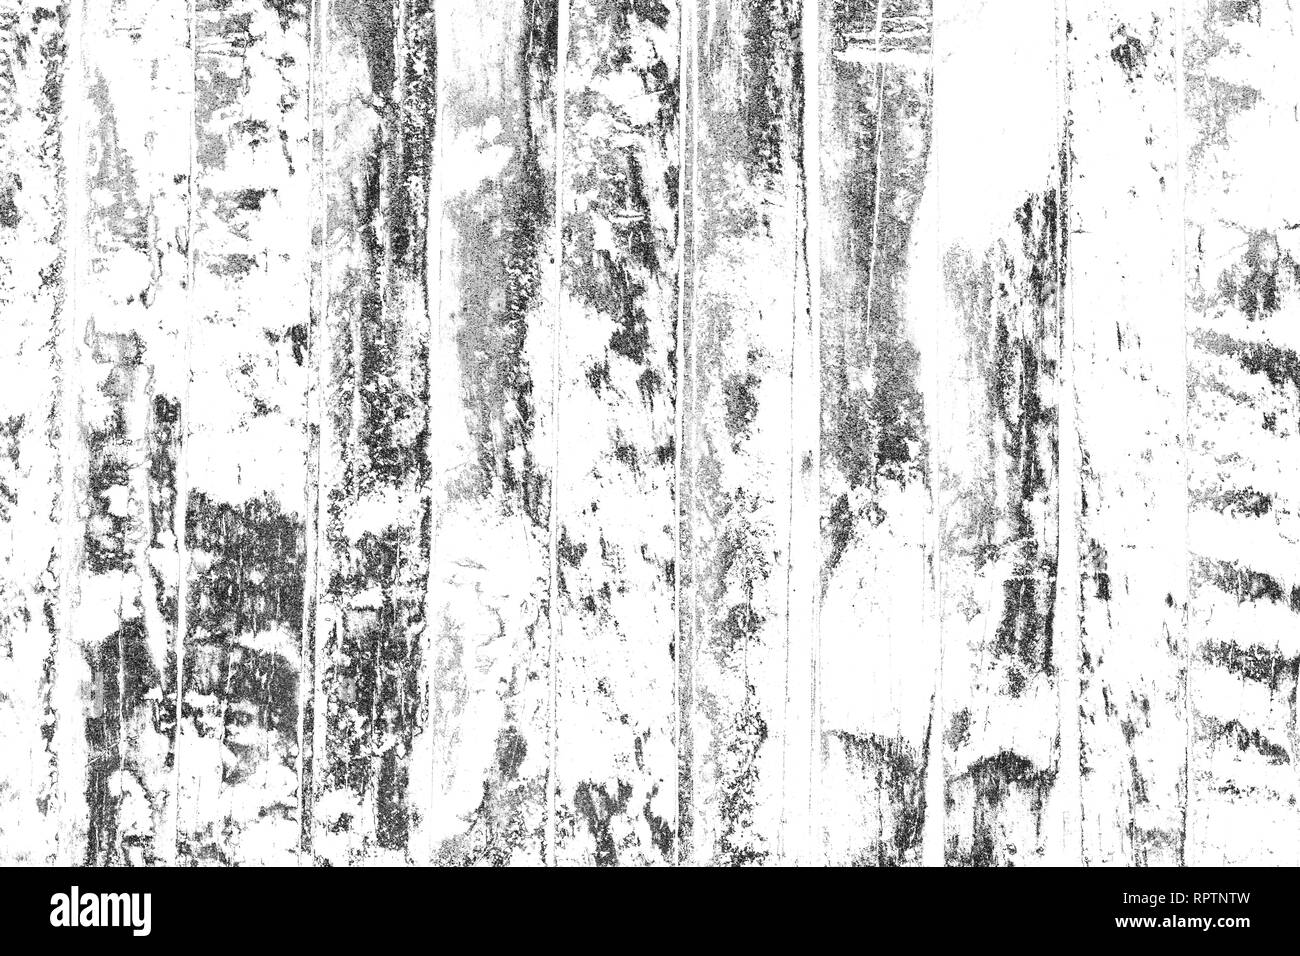 Holz- Oberfläche mit Kratzer, Flecken in Schwarz und Weiß. Abstrakte monochrome grunge Elemente für Design und Hintergrund. Stockfoto